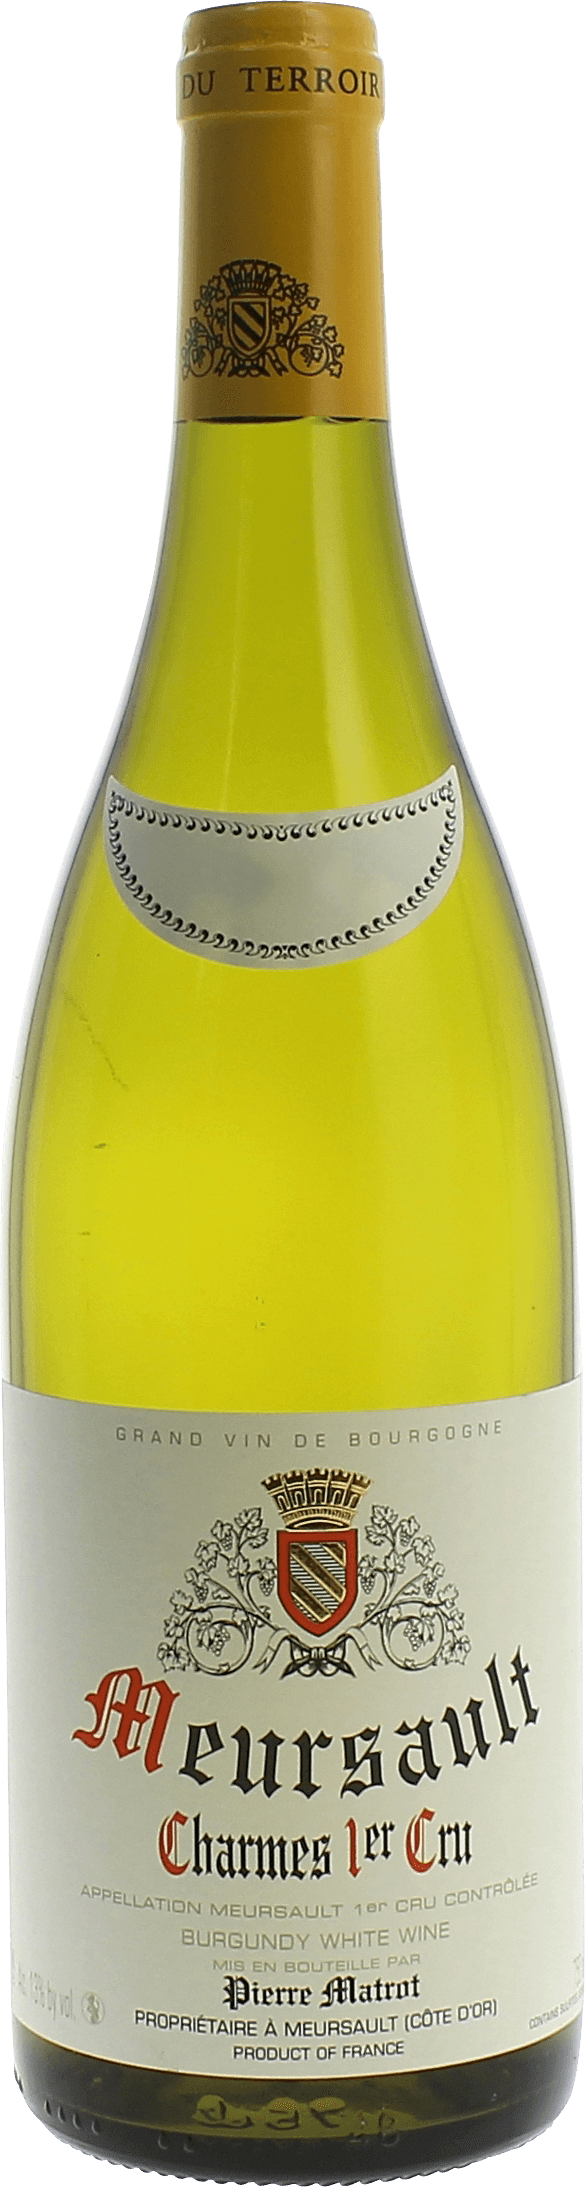 Meursault charmes 1er cru 2018 Domaine MATROT, Bourgogne blanc